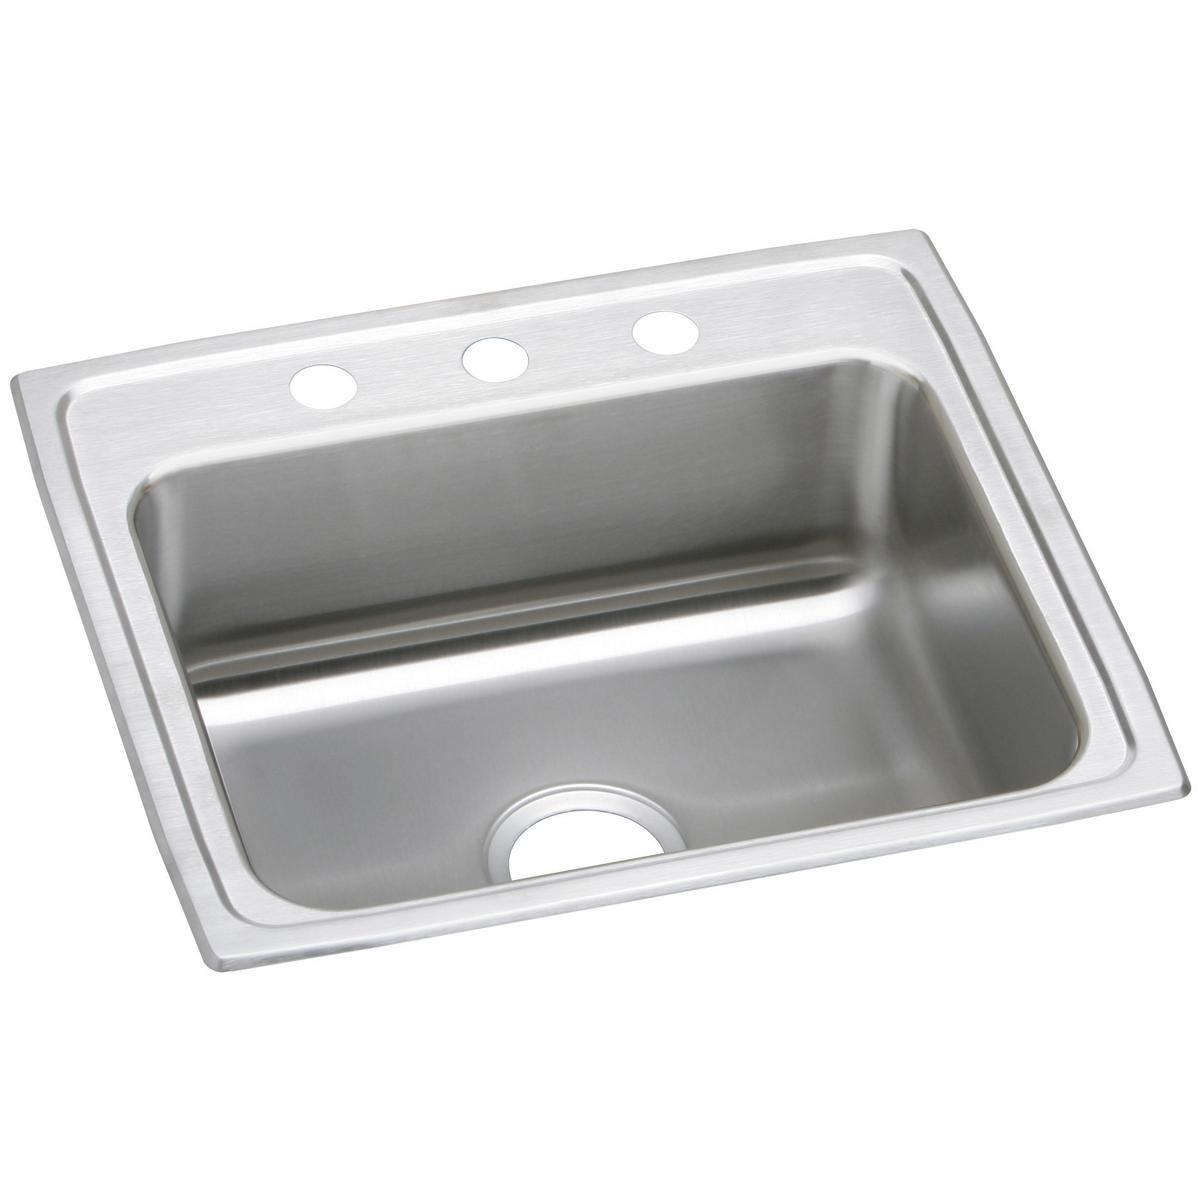 Elkay Celebrity Stainless Steel 25" x 22" x 7-1/2" Single Bowl Drop-in Sink